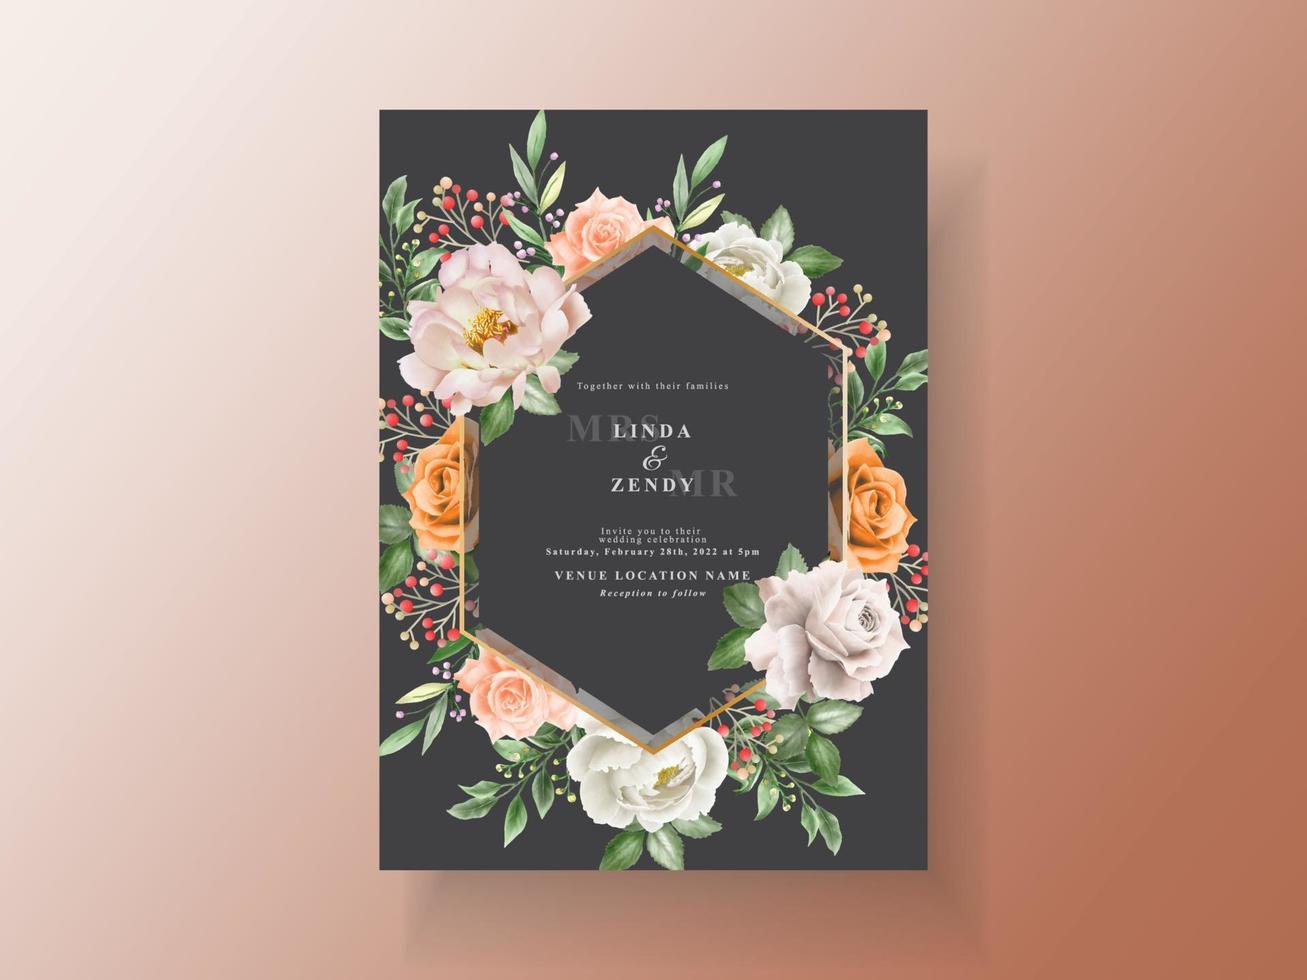 bella carta dell'invito di nozze con l'acquerello elegante del fiore e delle foglie vettore